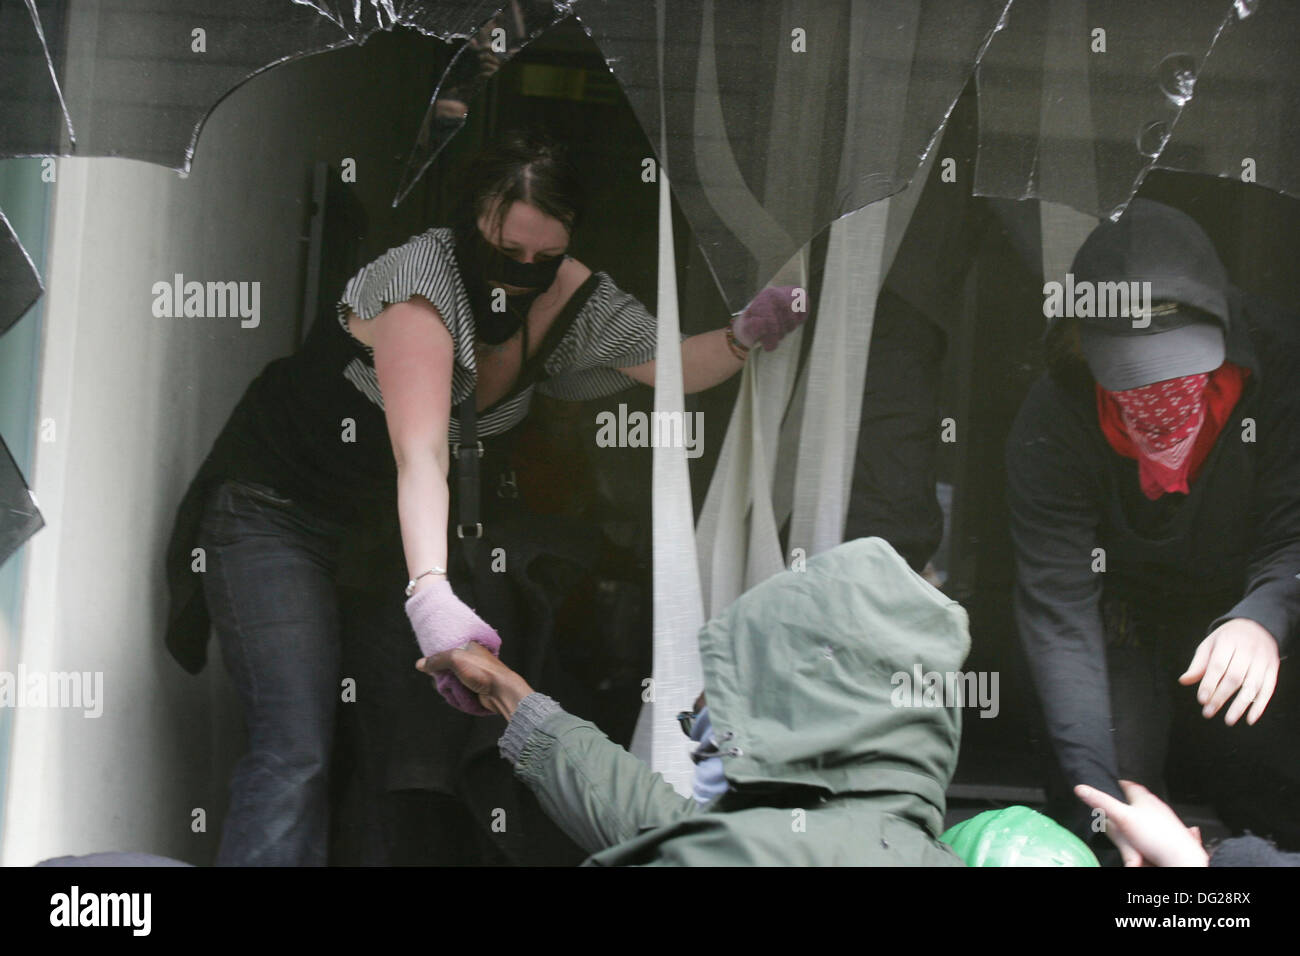 Les manifestants ont brisé les Royal Bank of Scotland (RBS) fenêtres de bureau près de la direction générale de la Banque d'Angleterre le 1 avril 2009. Banque D'Images